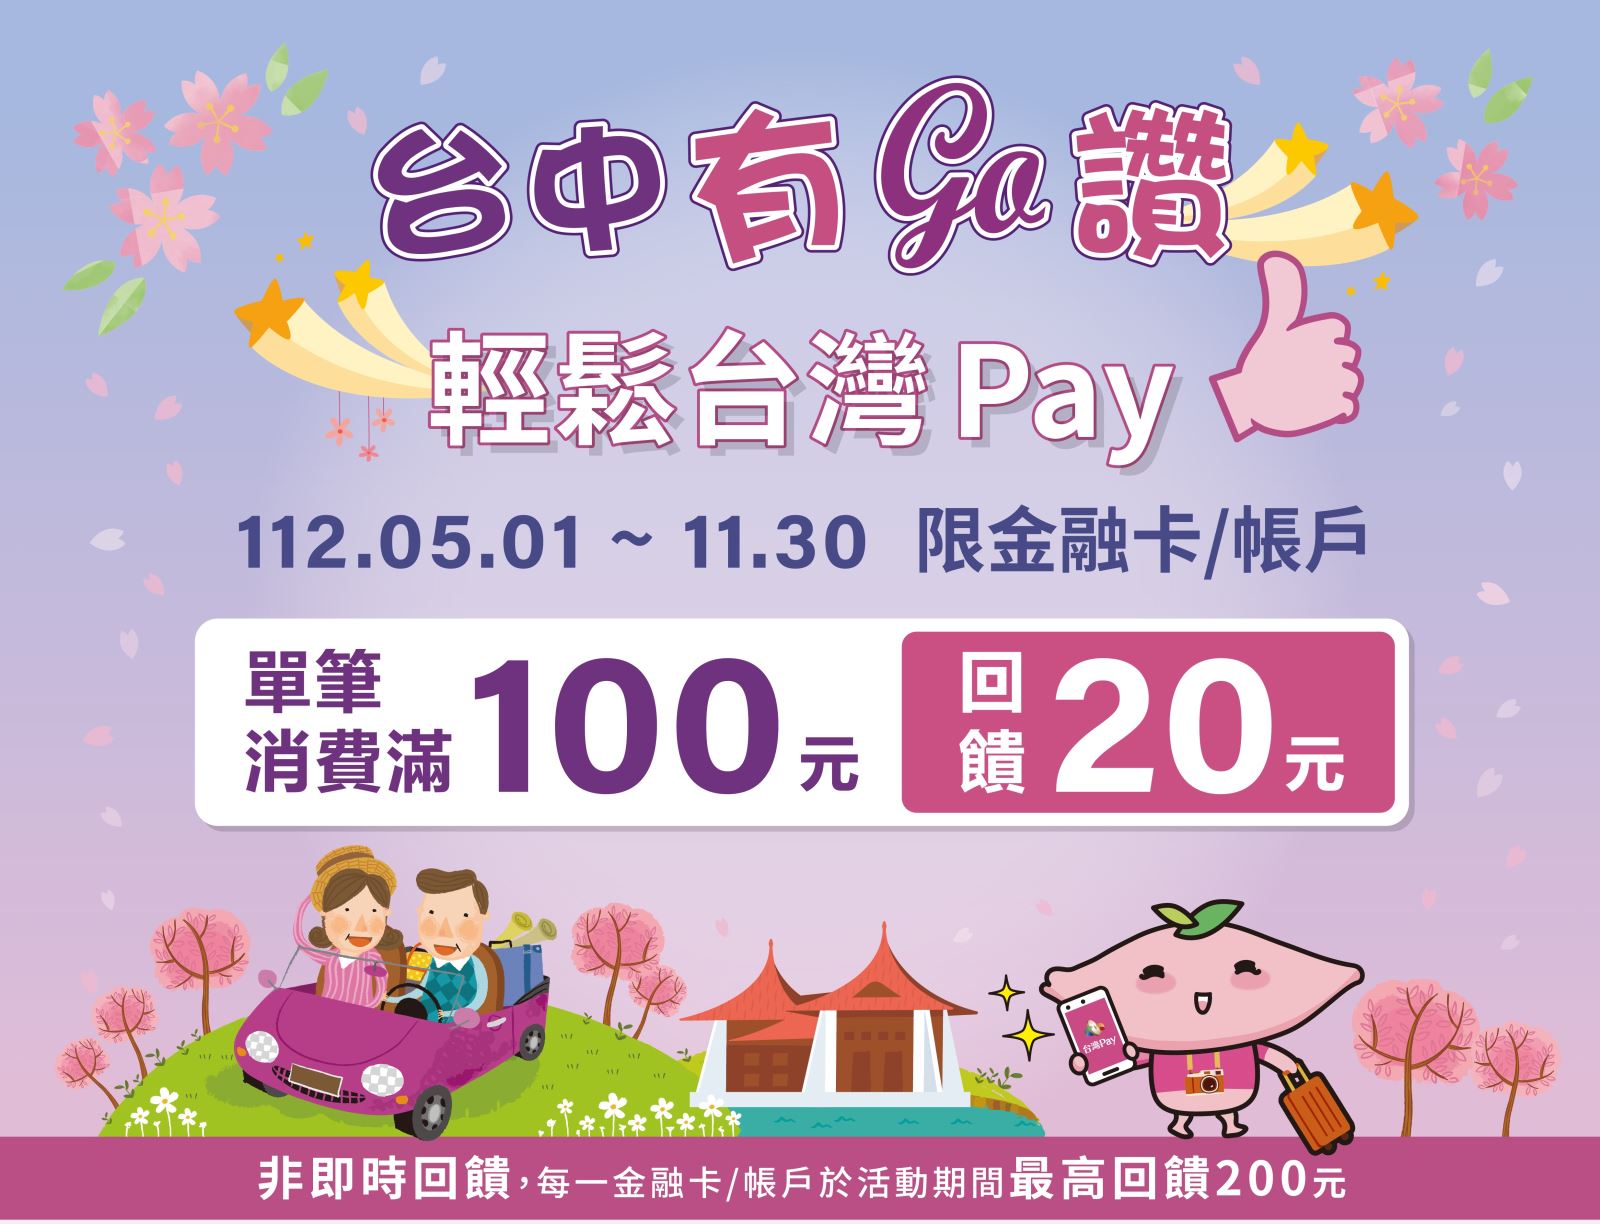 以「台灣Pay」QR Code掃碼支付，單筆消費滿新臺幣100元，可獲得20元現金回饋，滿200元回饋40元